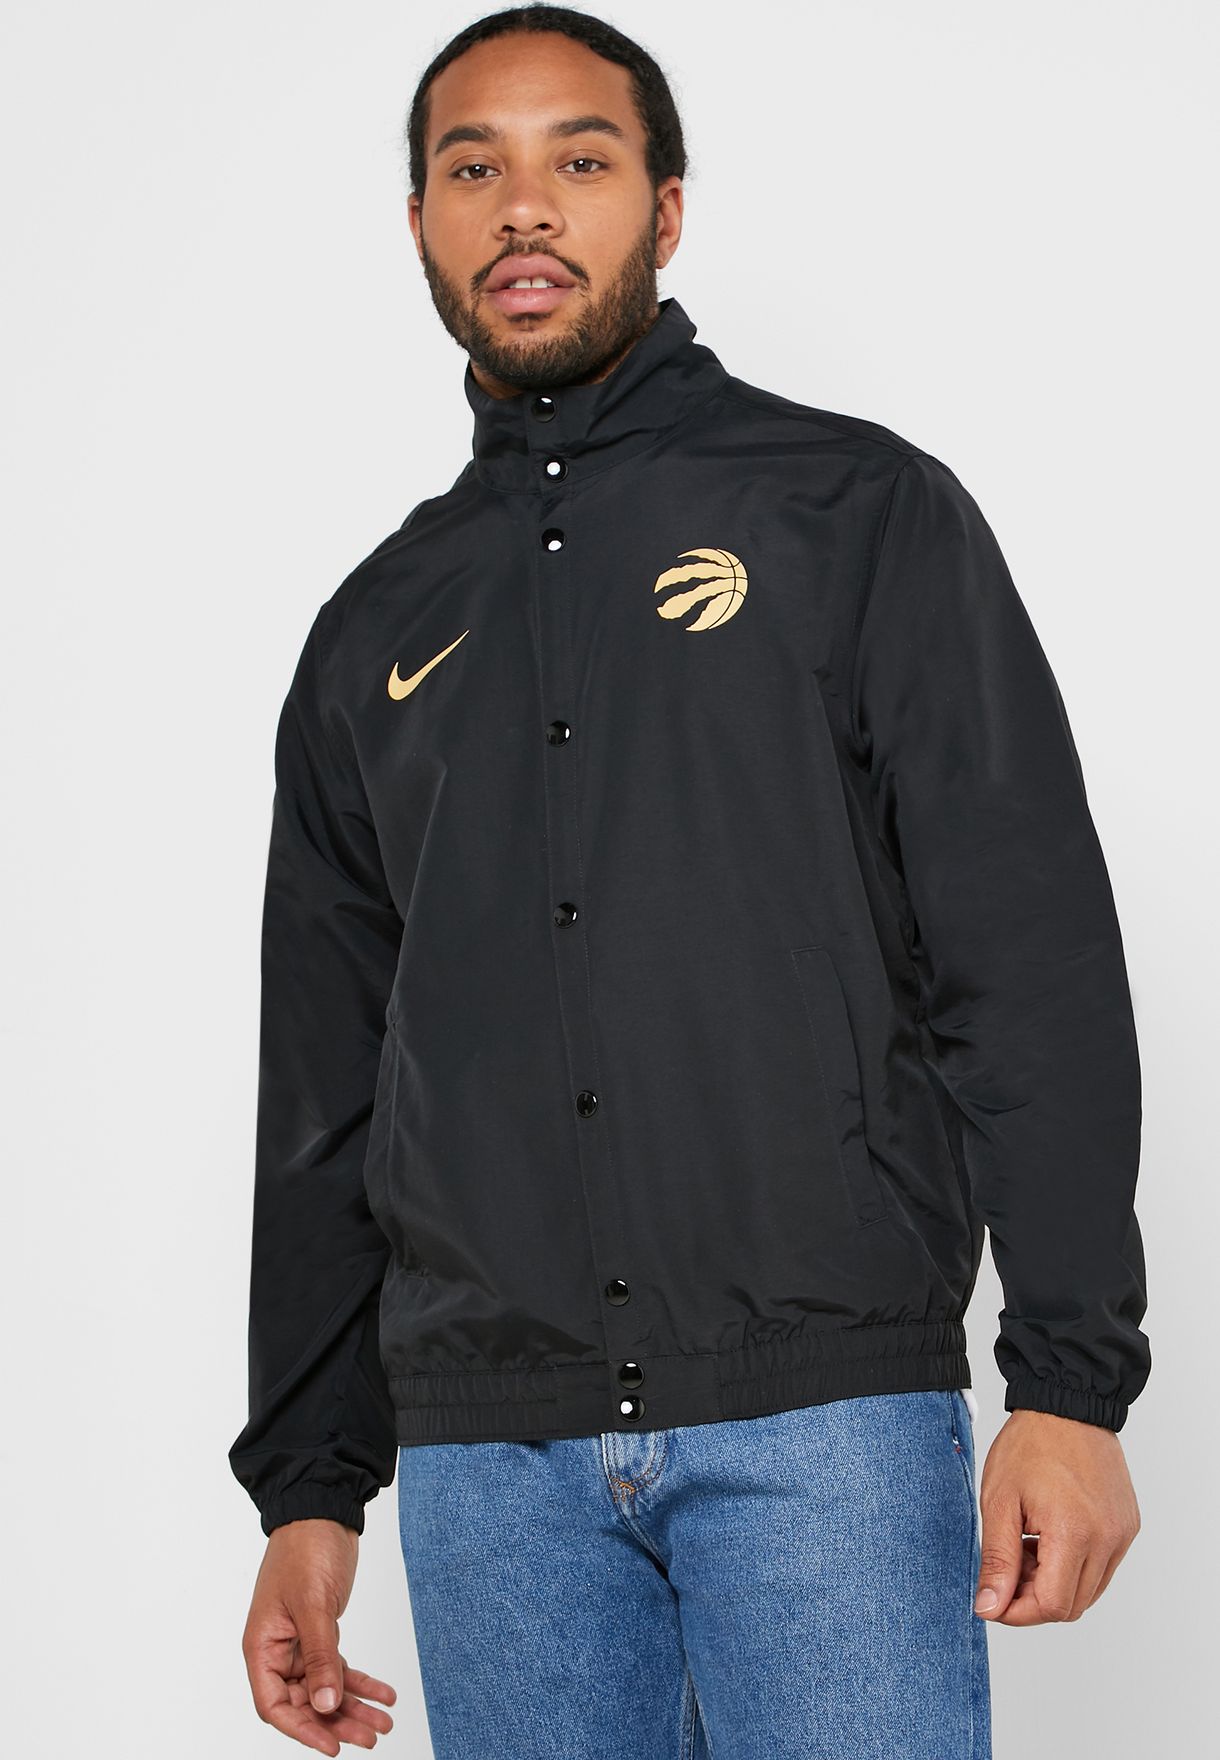 Buy Nike black Toronto Raptors jacket 